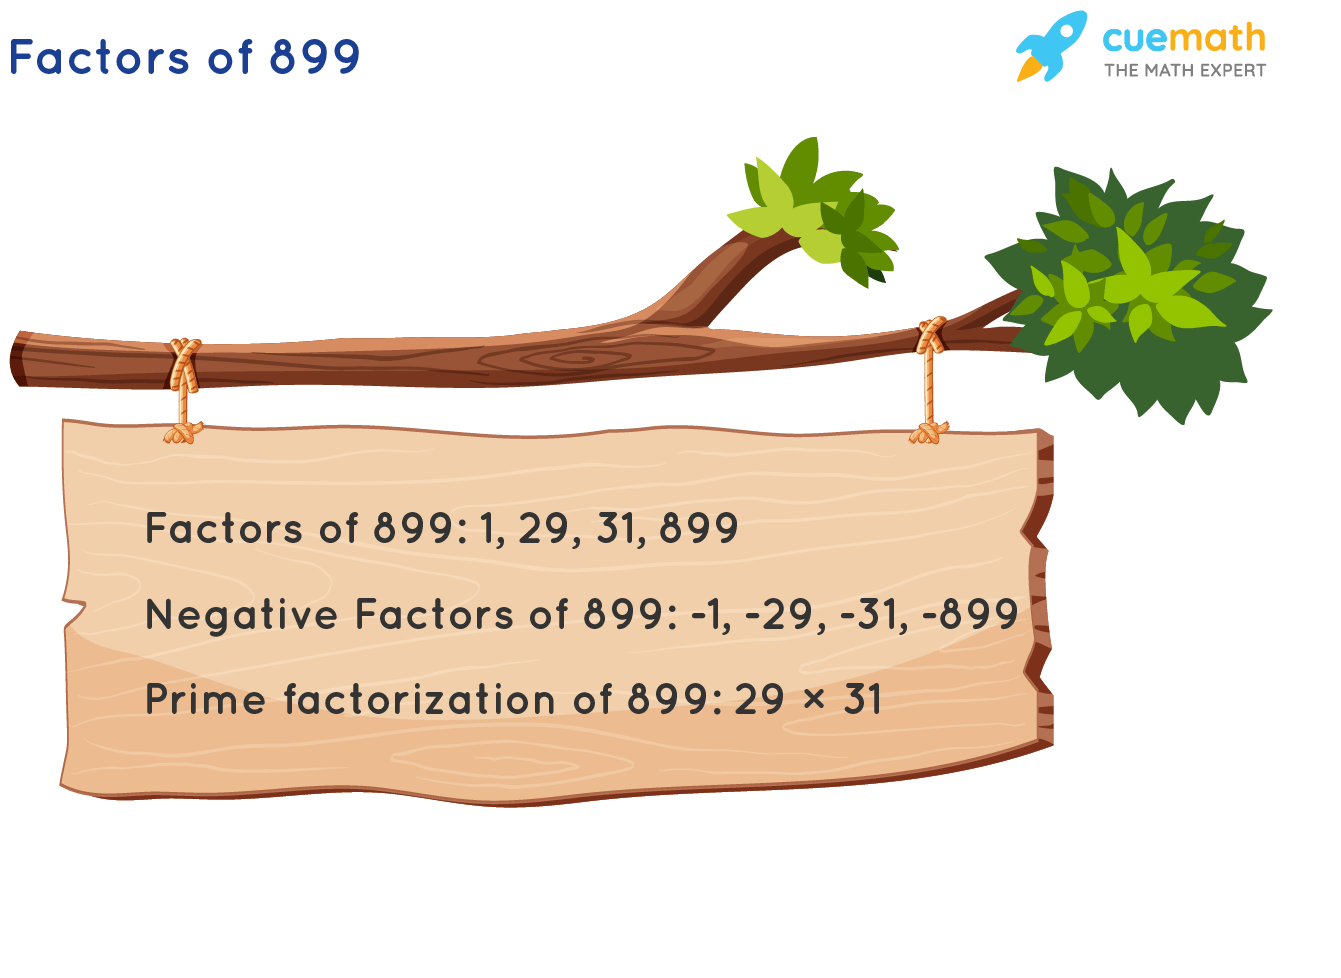 Factors of 899